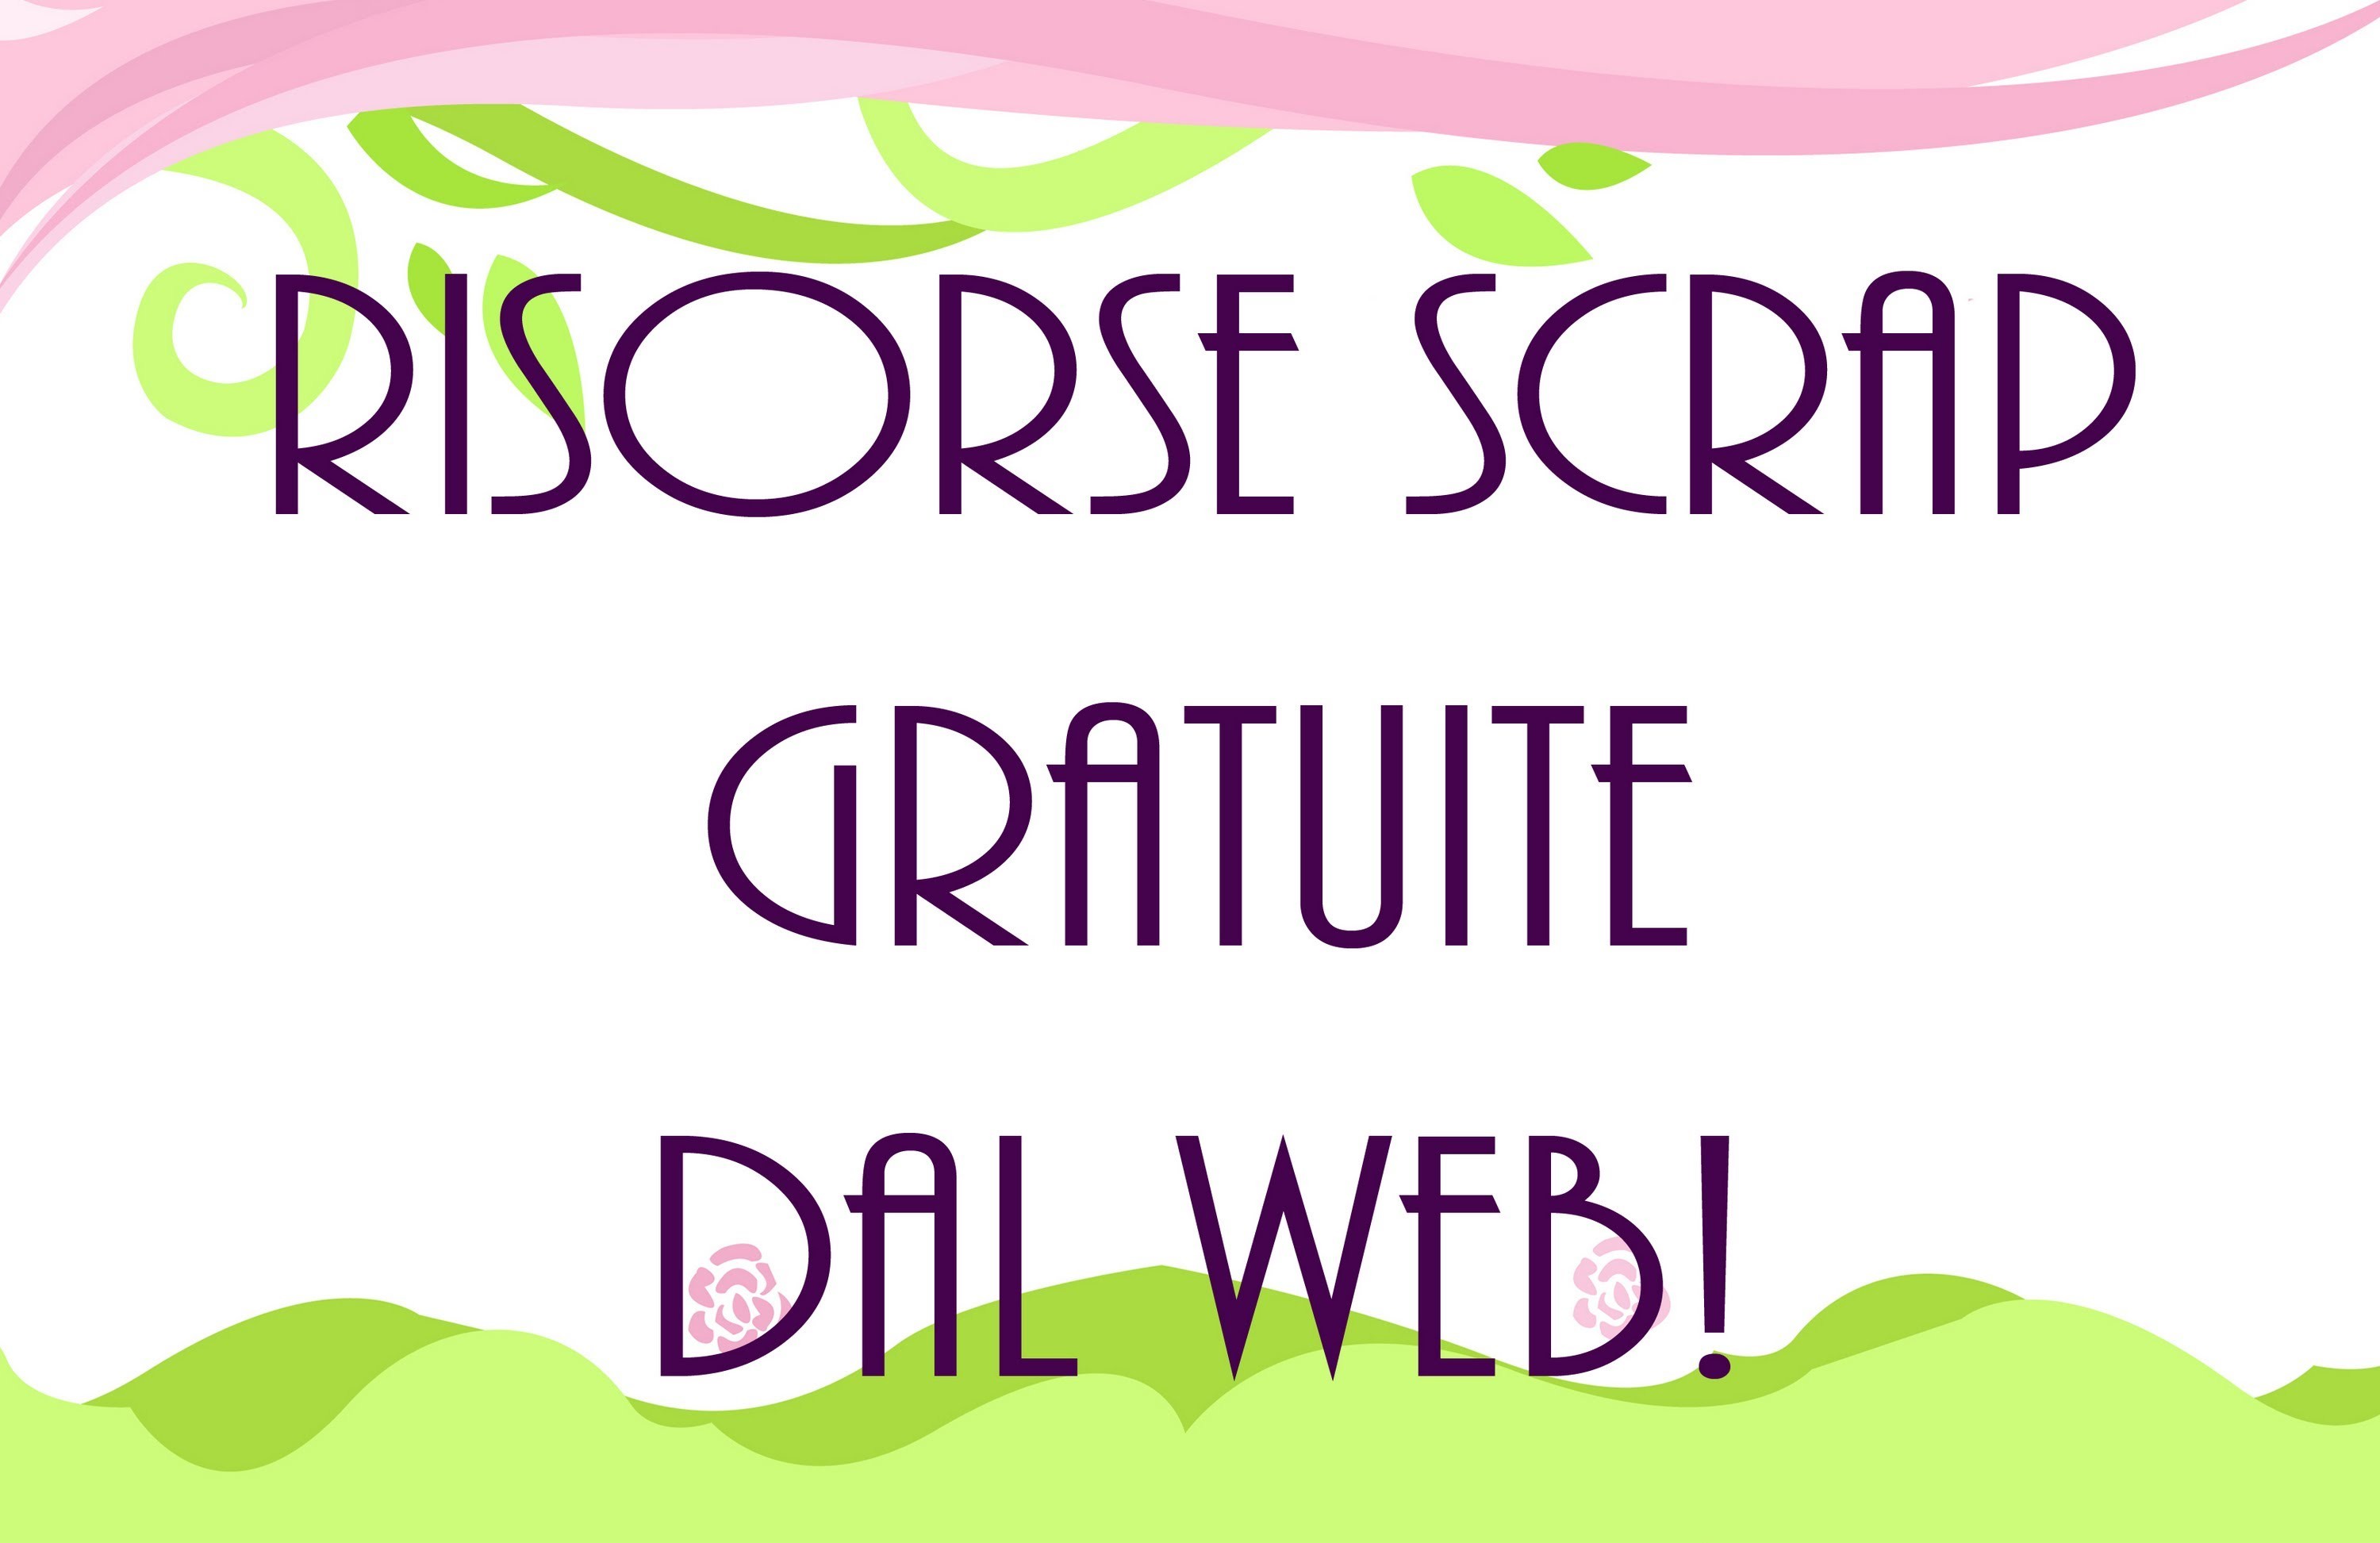 Risorse Scrap Gratuite nel Web! - Scrap free resources